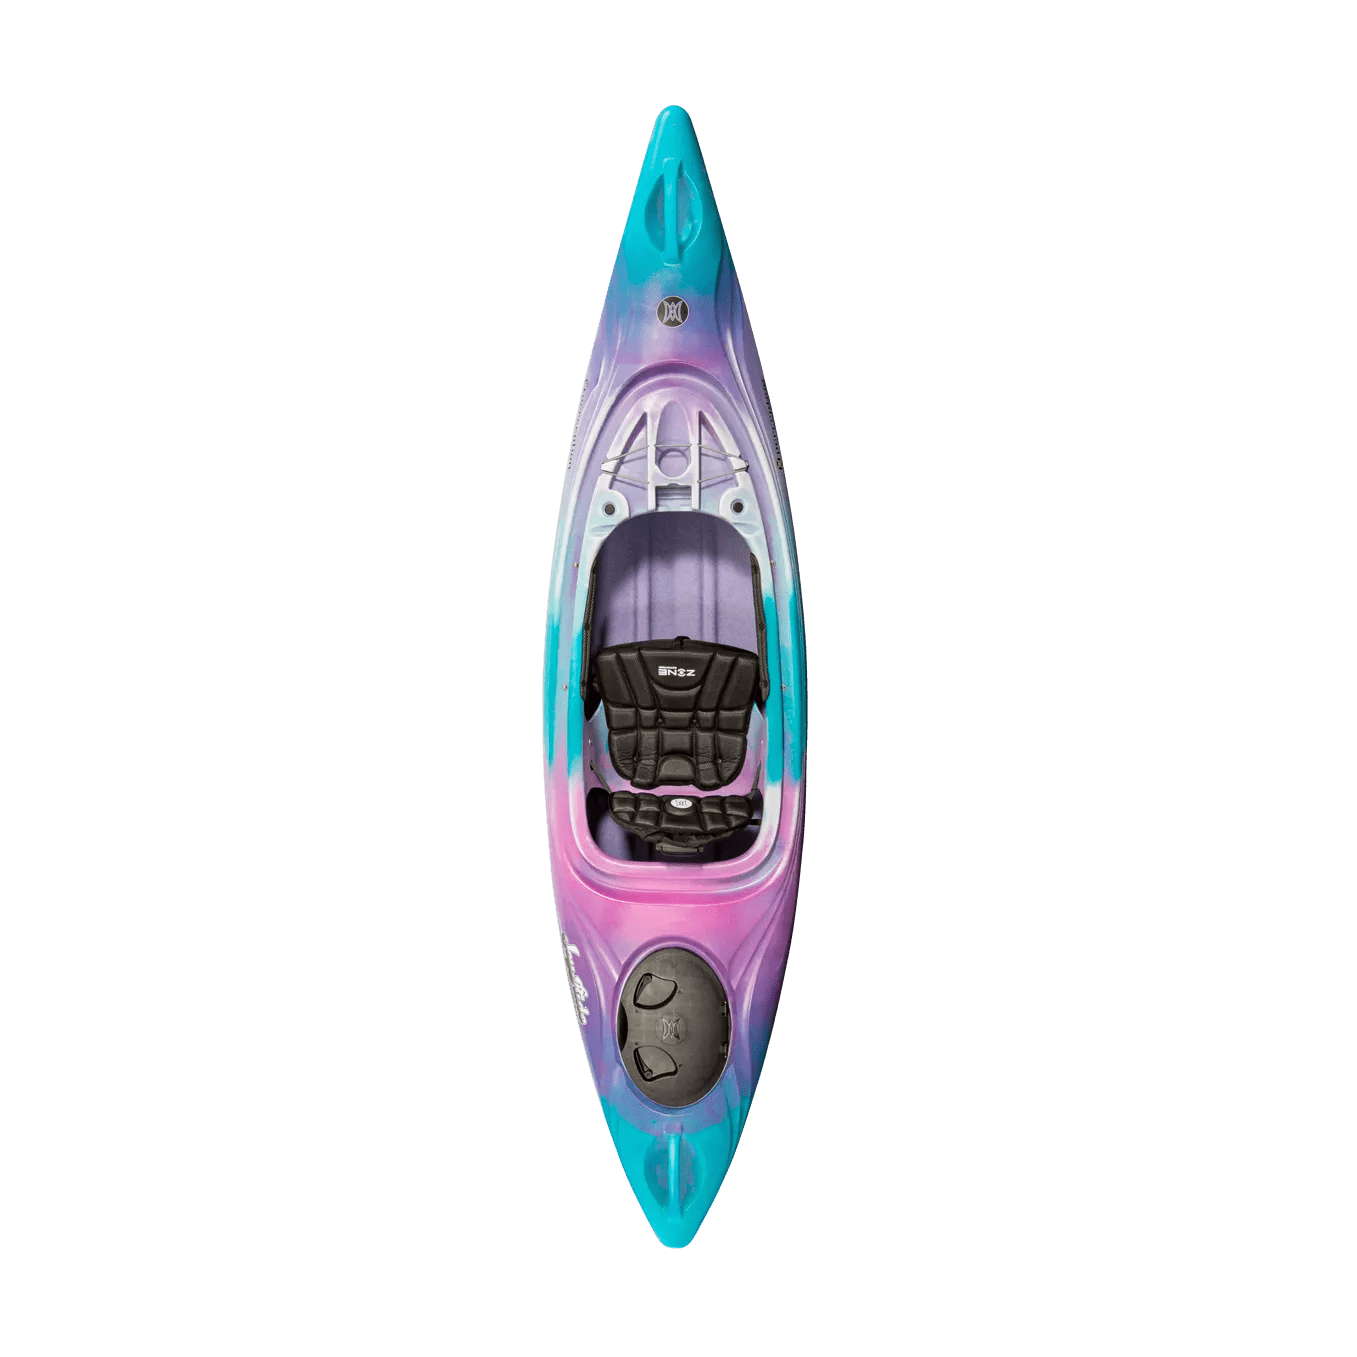 PERCEPTION - Joyride 10.0 Recreational Kayak - Discontinued color/model - Violet - 9331779173 - TOP 